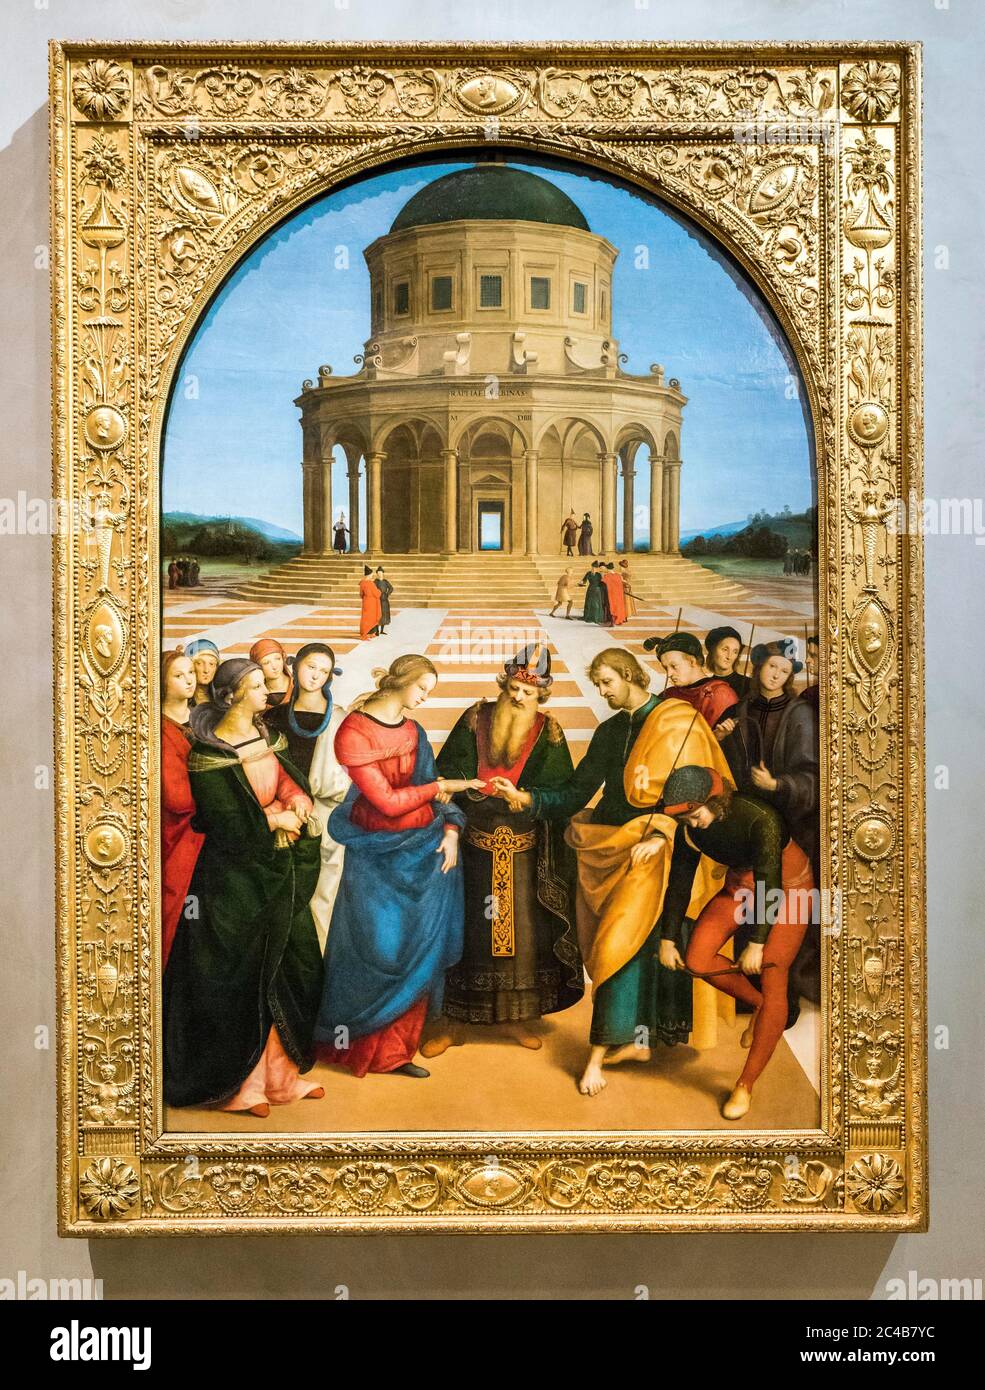 Sposalizio della Vergine, the Marriage of the Virgin, painting by Raffaello Sanzio called Raphael, 1483 - 1520, Renaissance, Pinacoteca di Brera Stock Photo